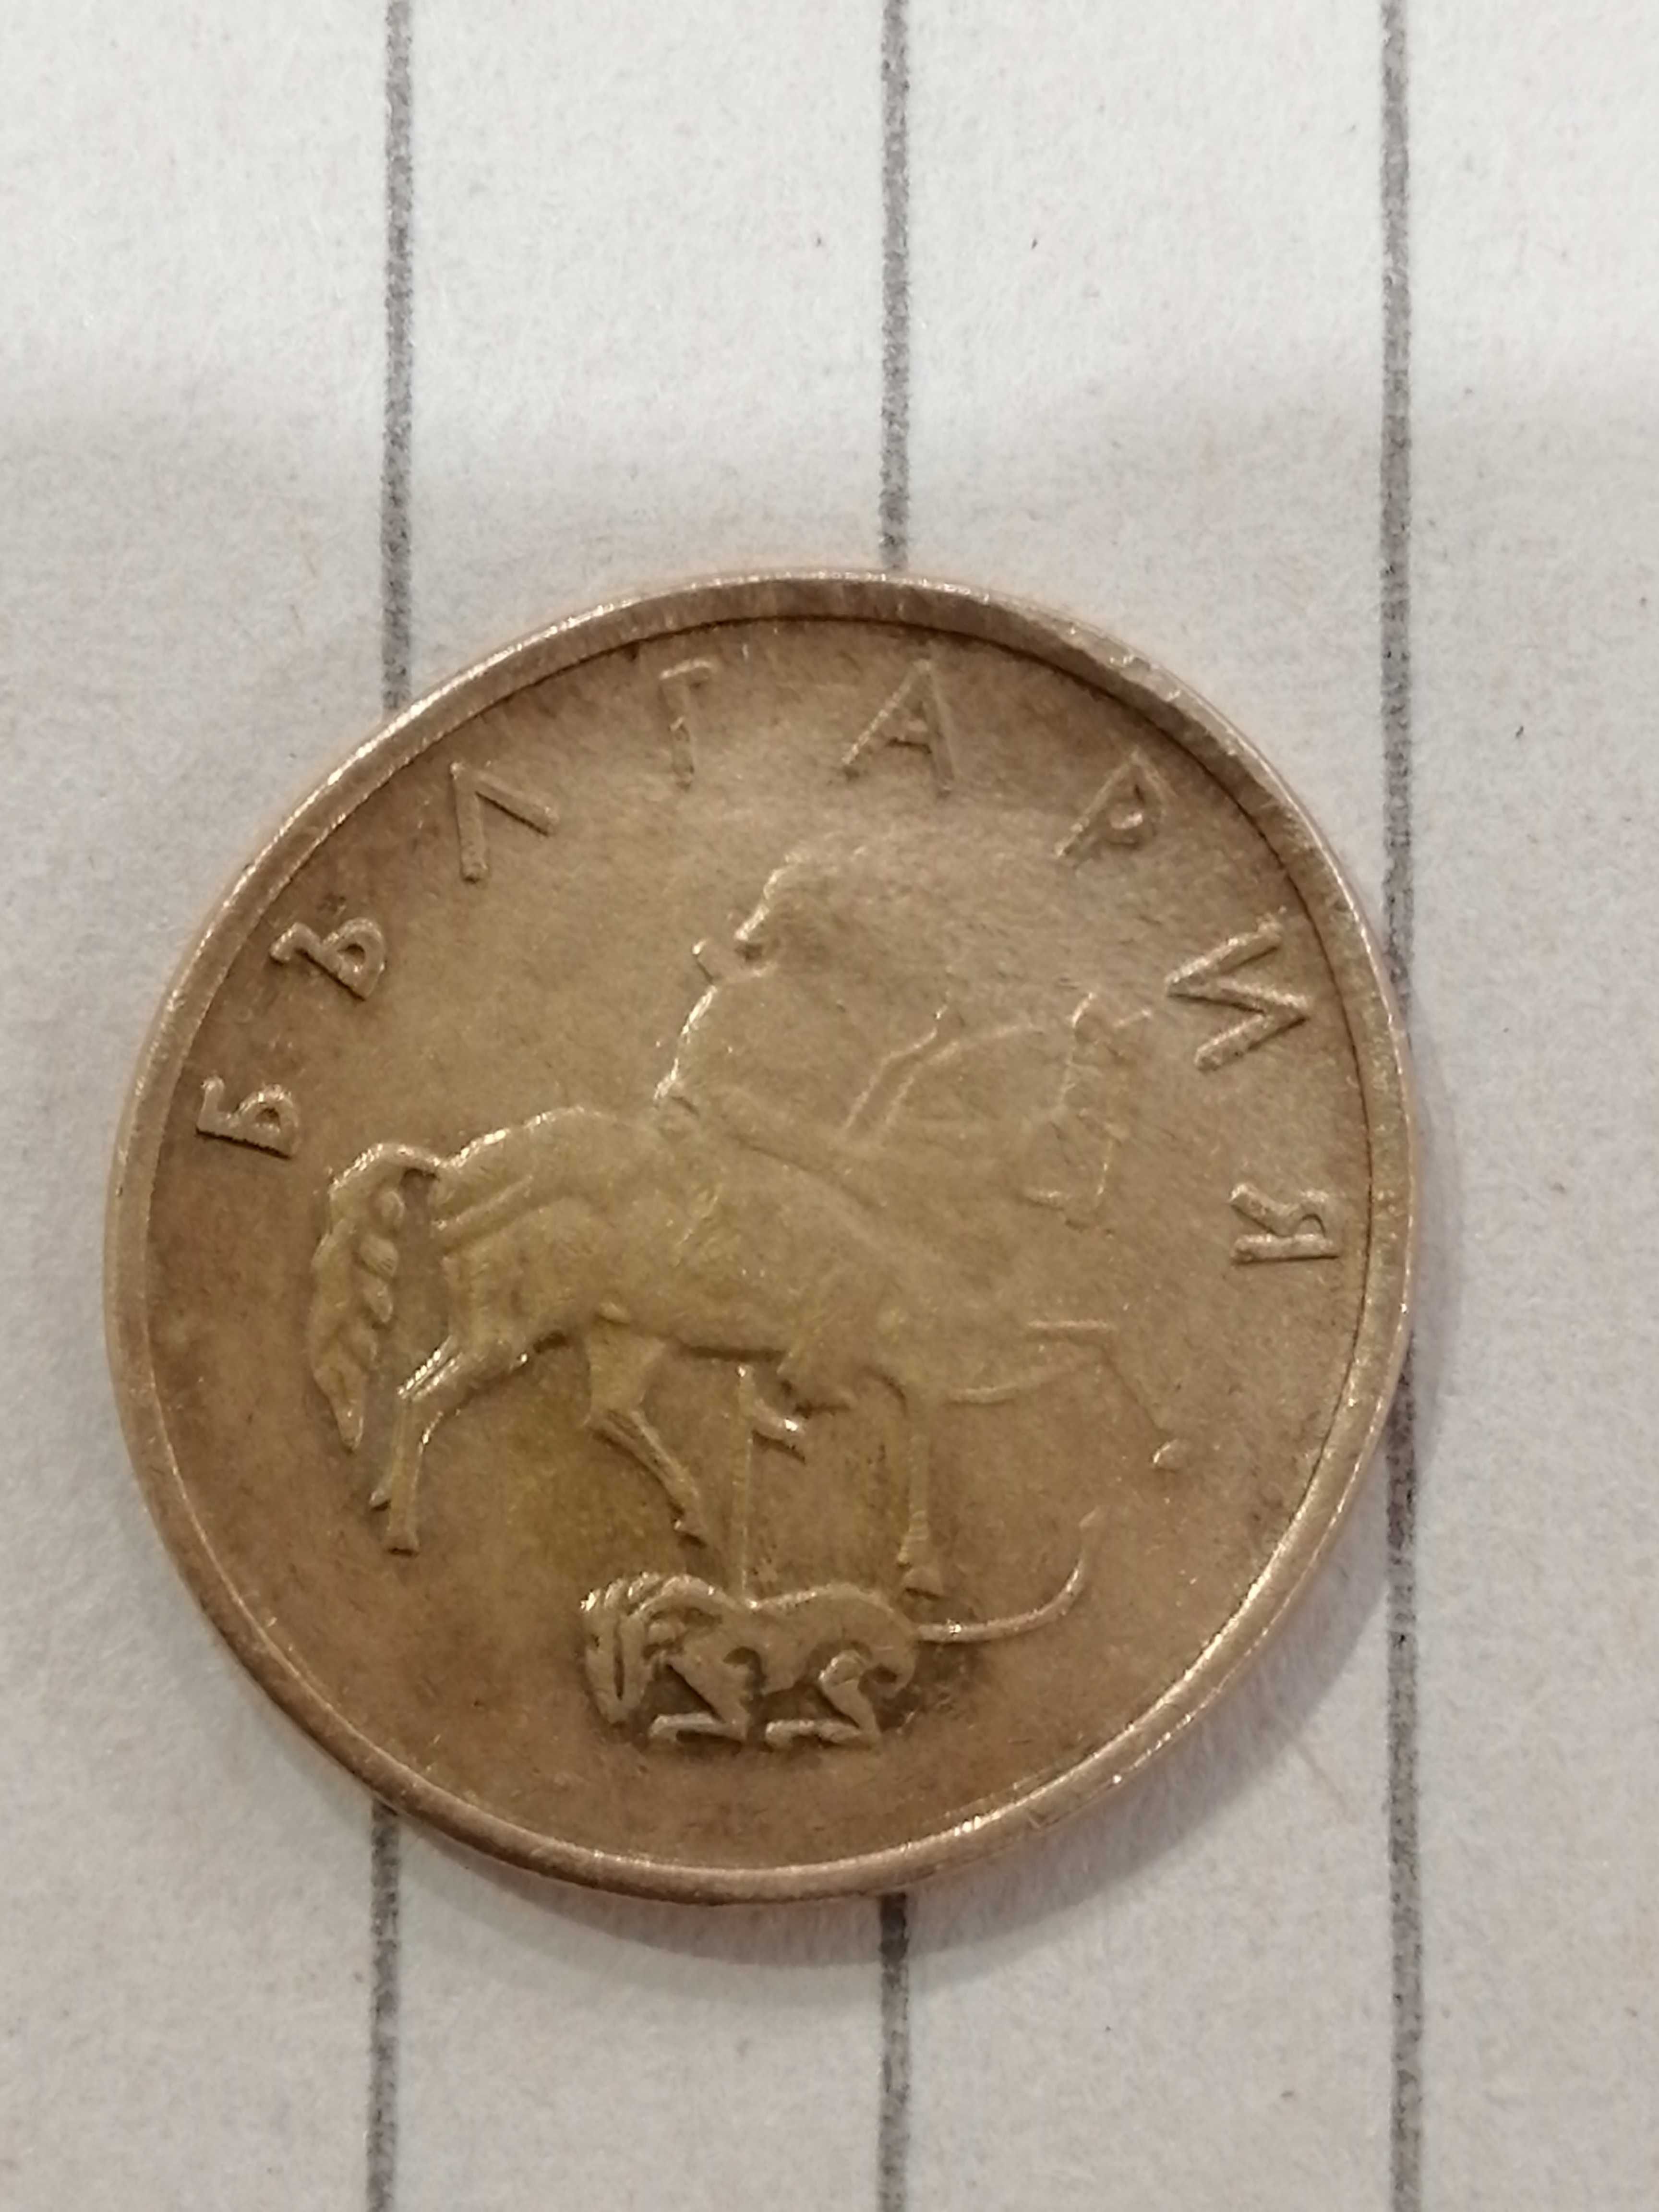 Уникален куриоз при отсичане на 5 стотинки 2000 г.